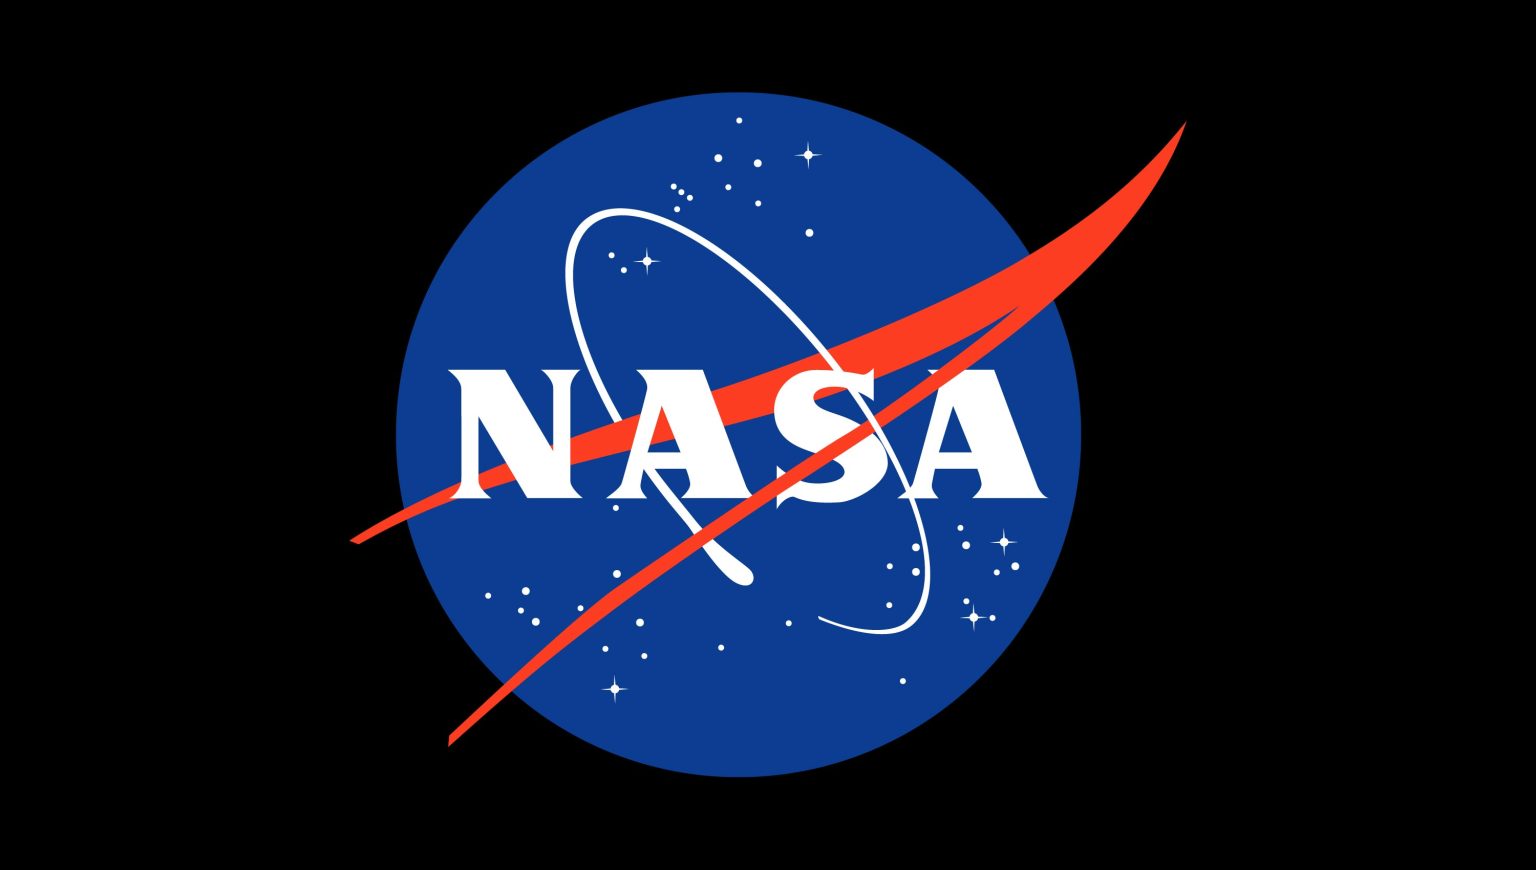 ngcb1 Esta semana @NASA: Artemis me muevo a Launchpad, Cargo Dragon parte, Luna alrededor del asteroide Polymele